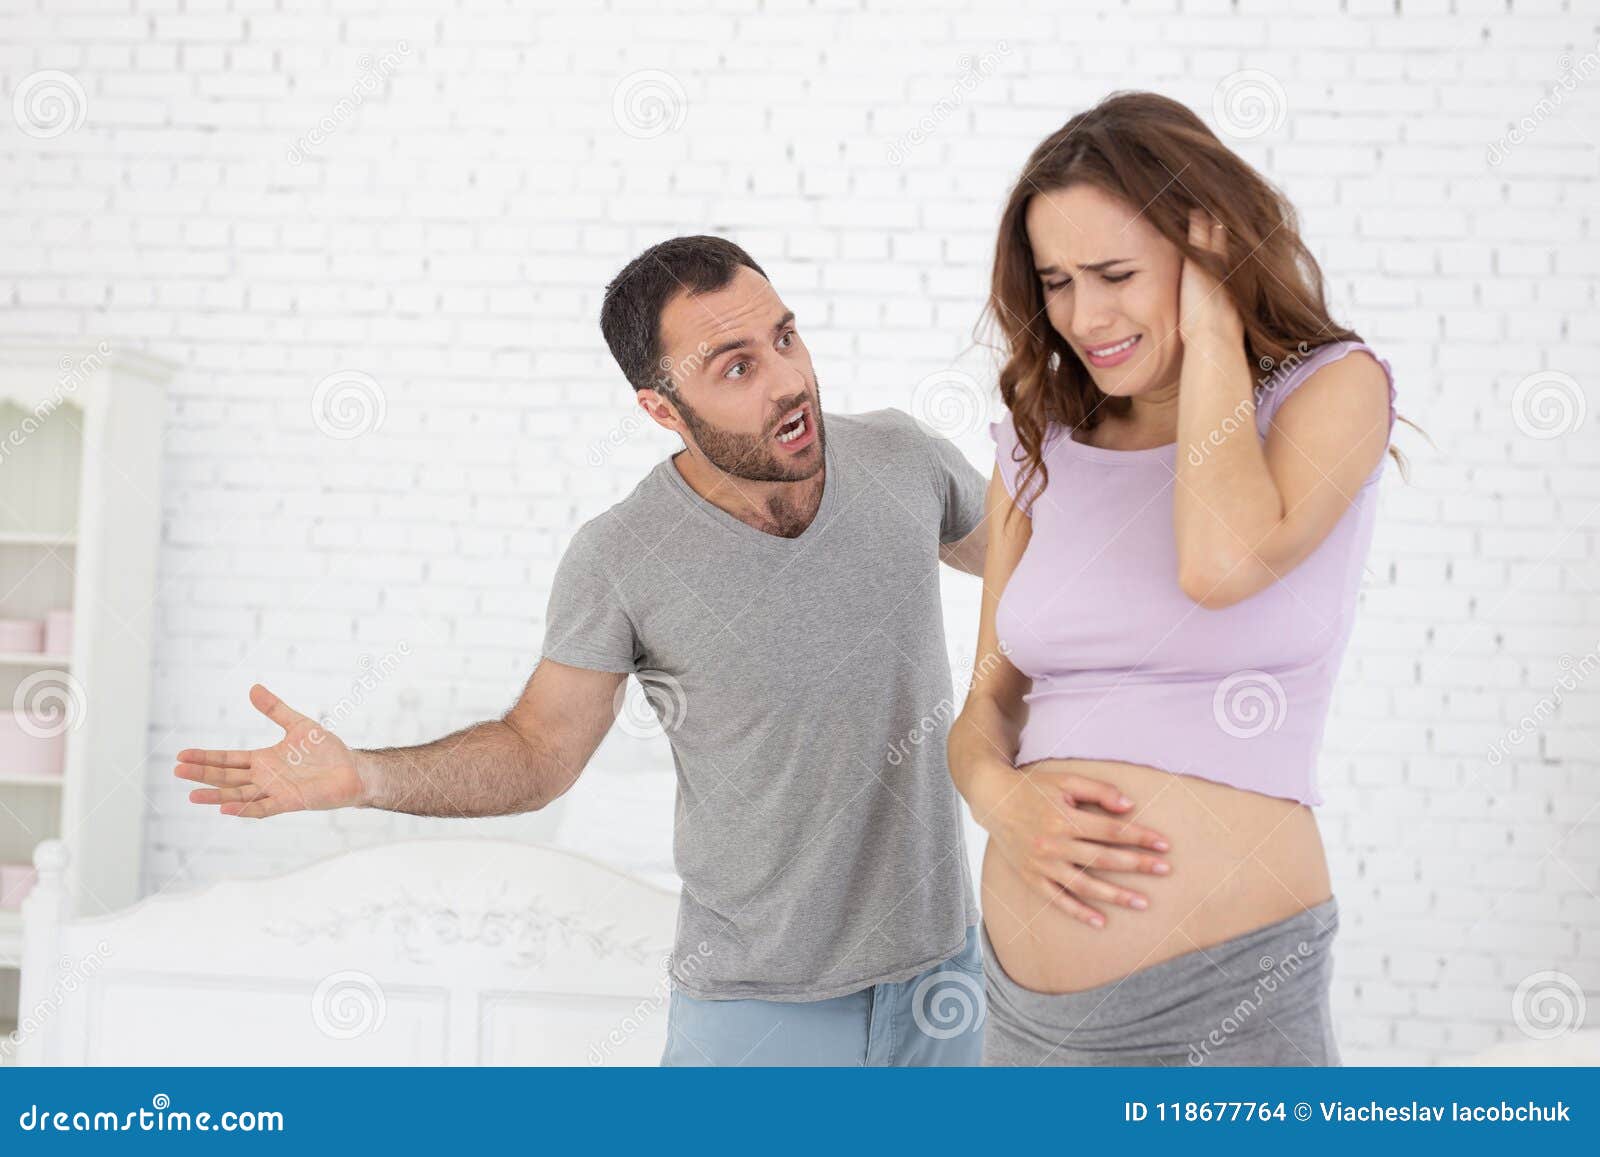 Изменила мужу и забеременела. Кричит на беременную.